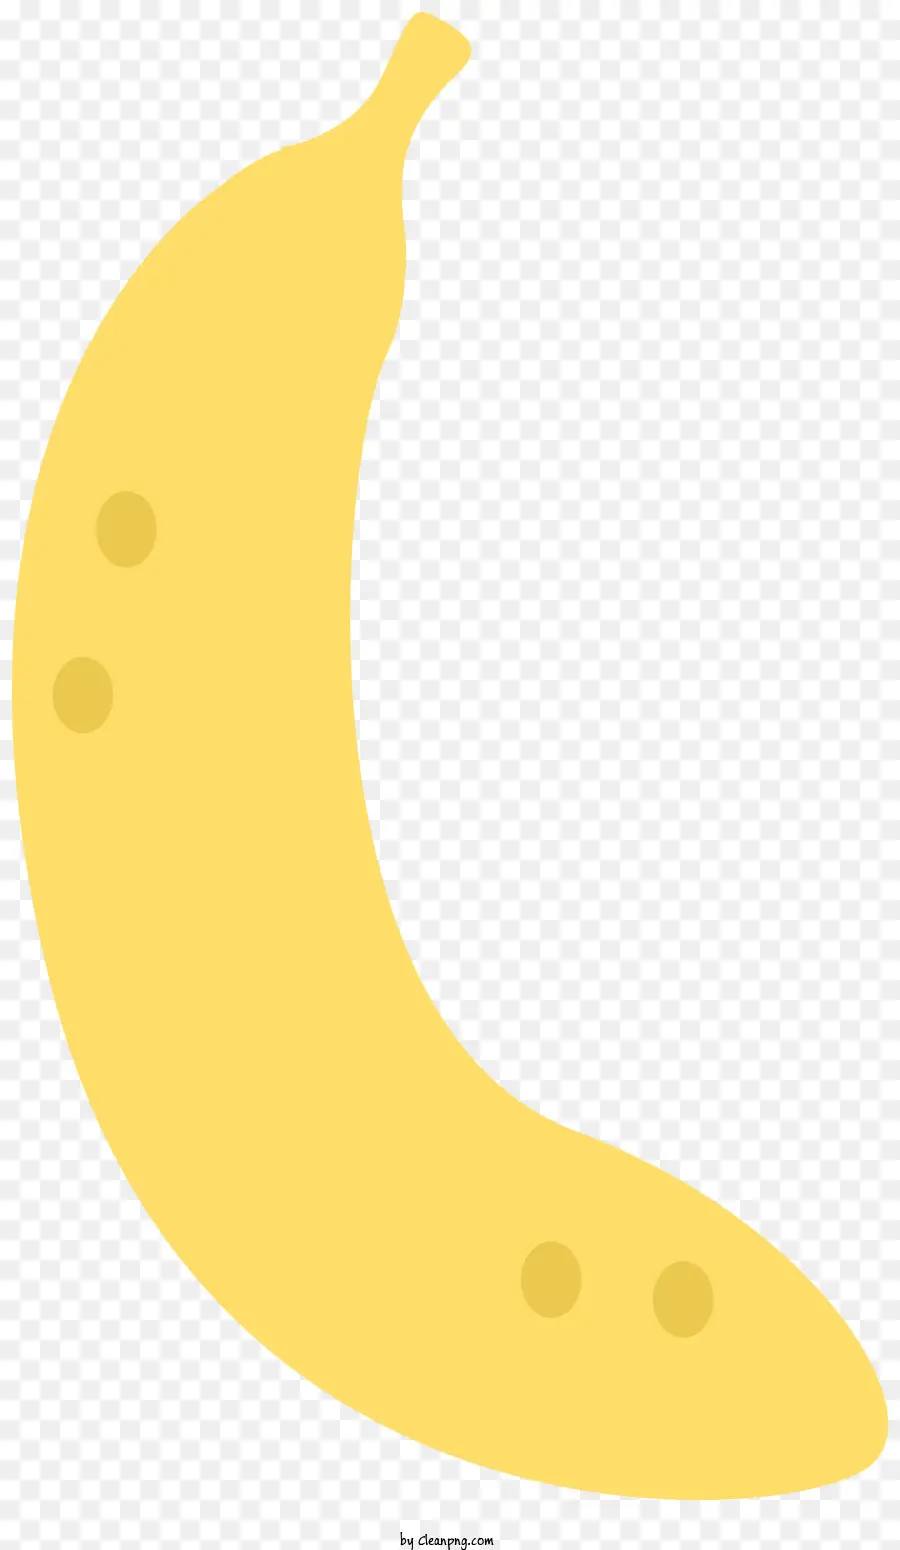 Banane Tropische Früchte gelbe Banane gebogene Bananen -Bananenrezepte - Gelbe, geschwungene Früchte, die in Gerichten und Desserts verwendet werden